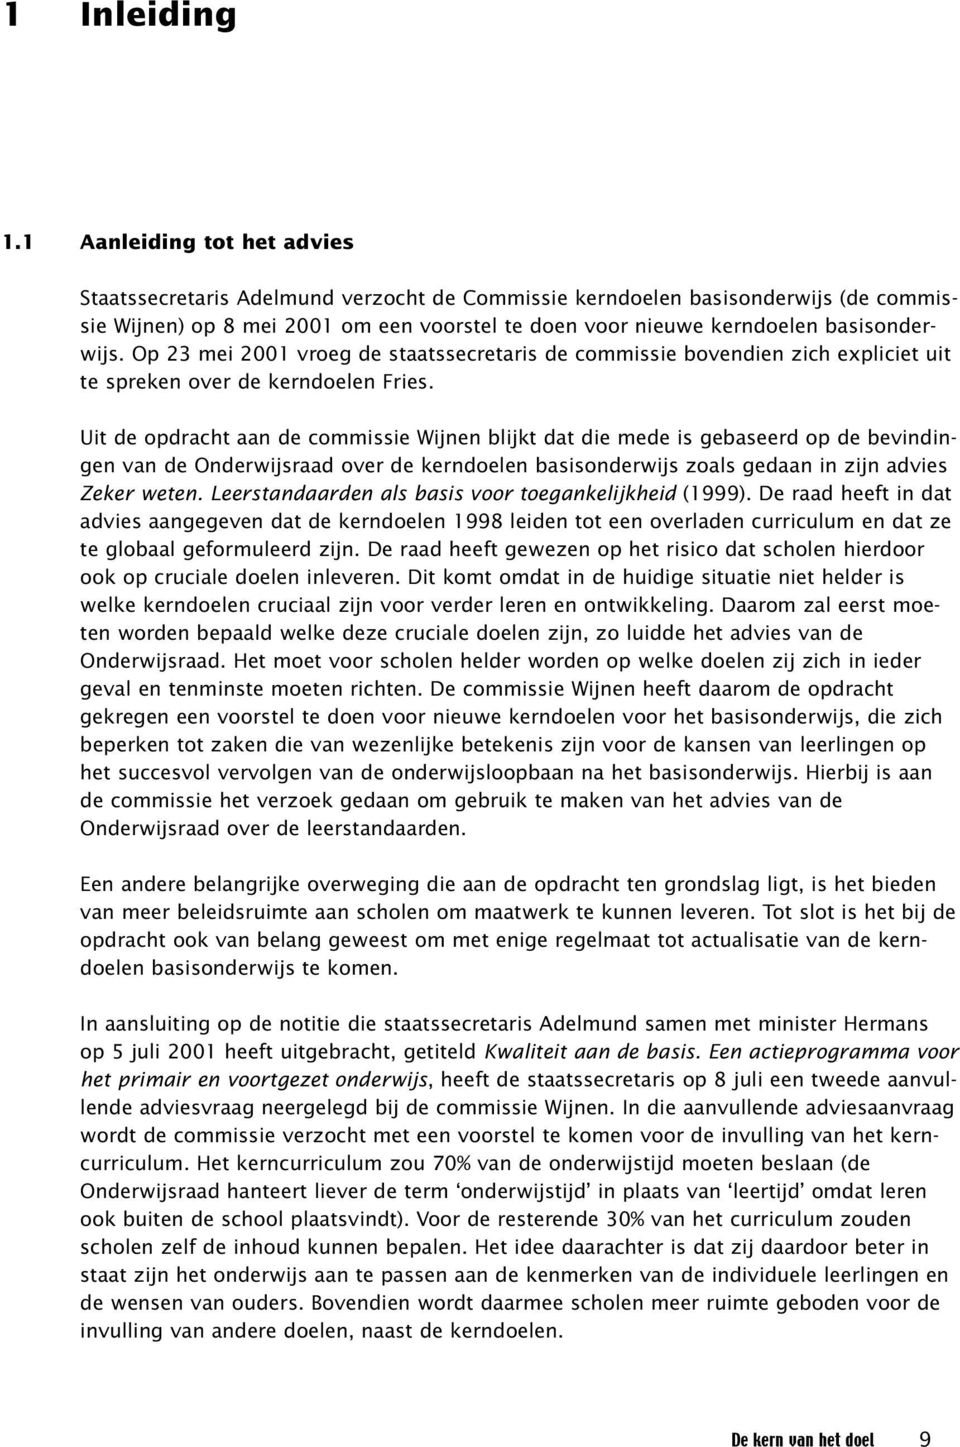 Op 23 mei 2001 vroeg de staatssecretaris de commissie bovendien zich expliciet uit te spreken over de kerndoelen Fries.